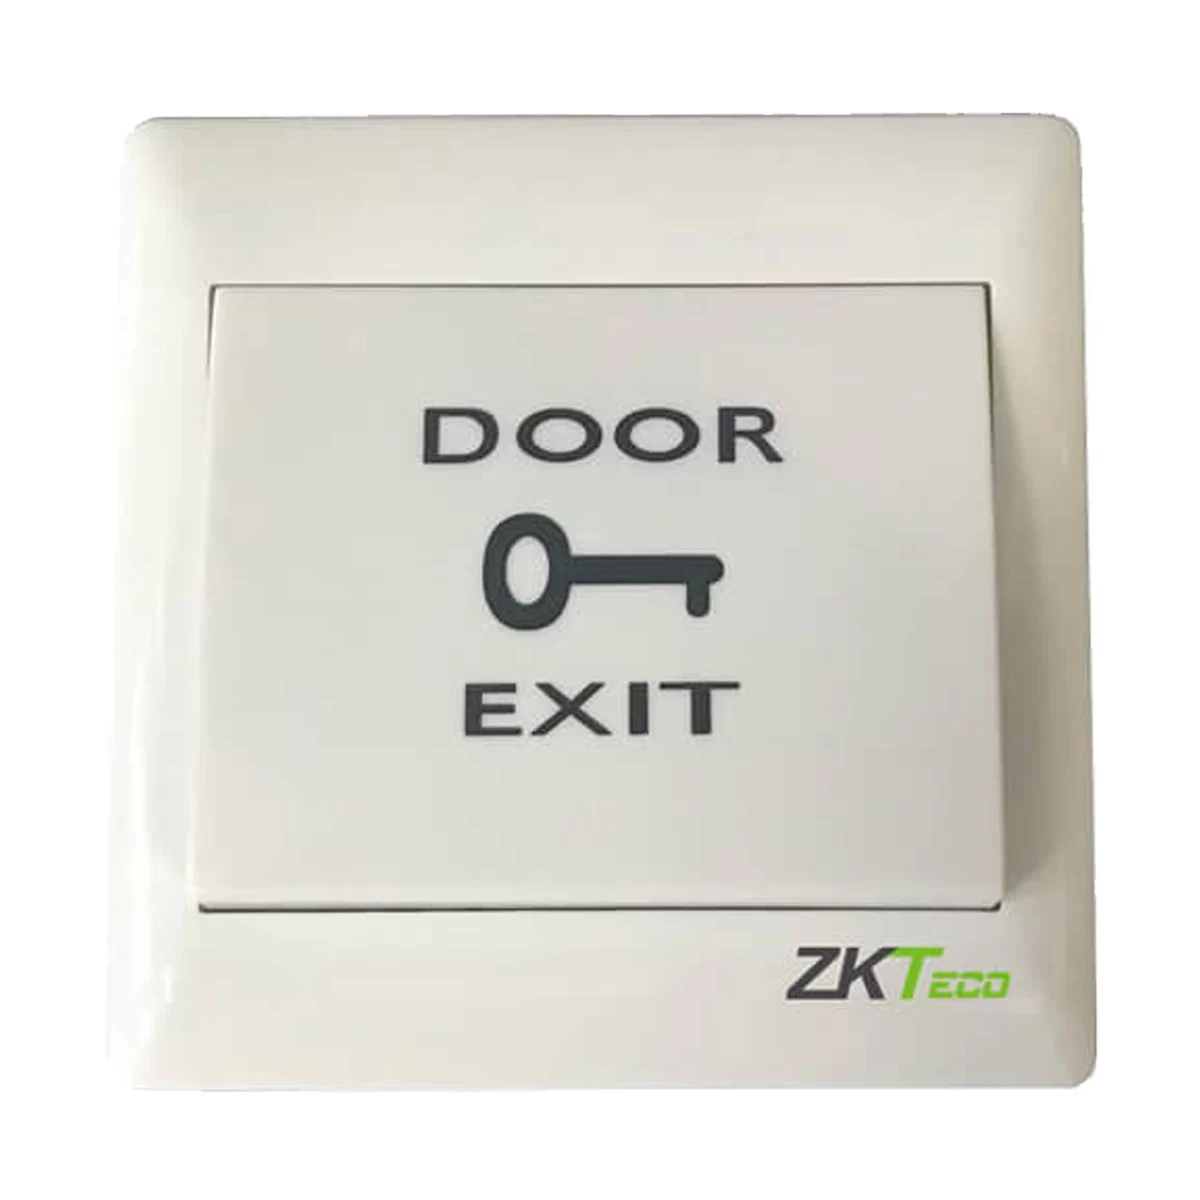 ZK Teco EX- 802 EXIT BUTTON